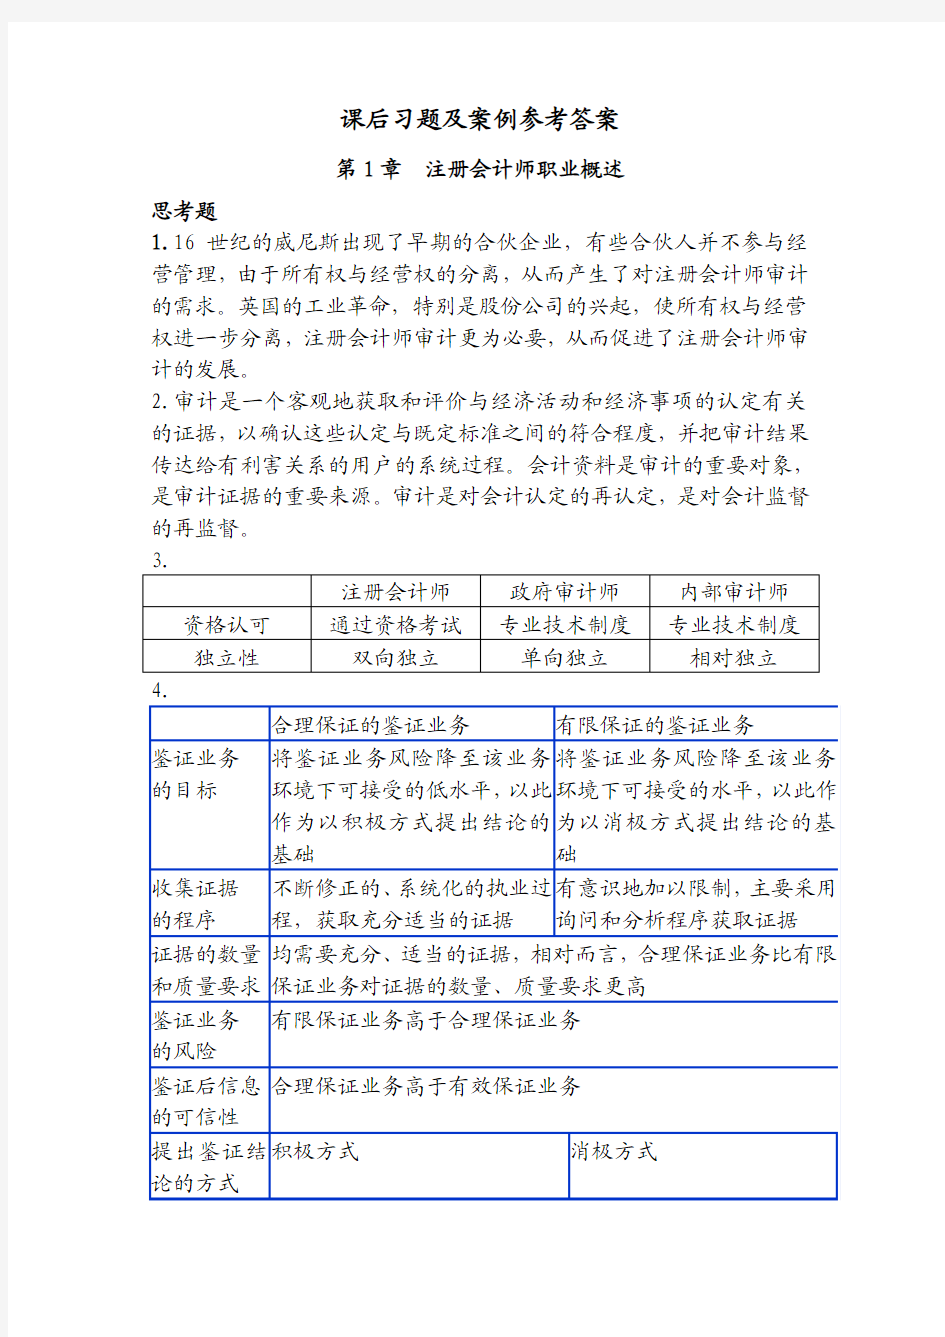 湘潭大学 《审计与鉴证服务》习题案例参考答案